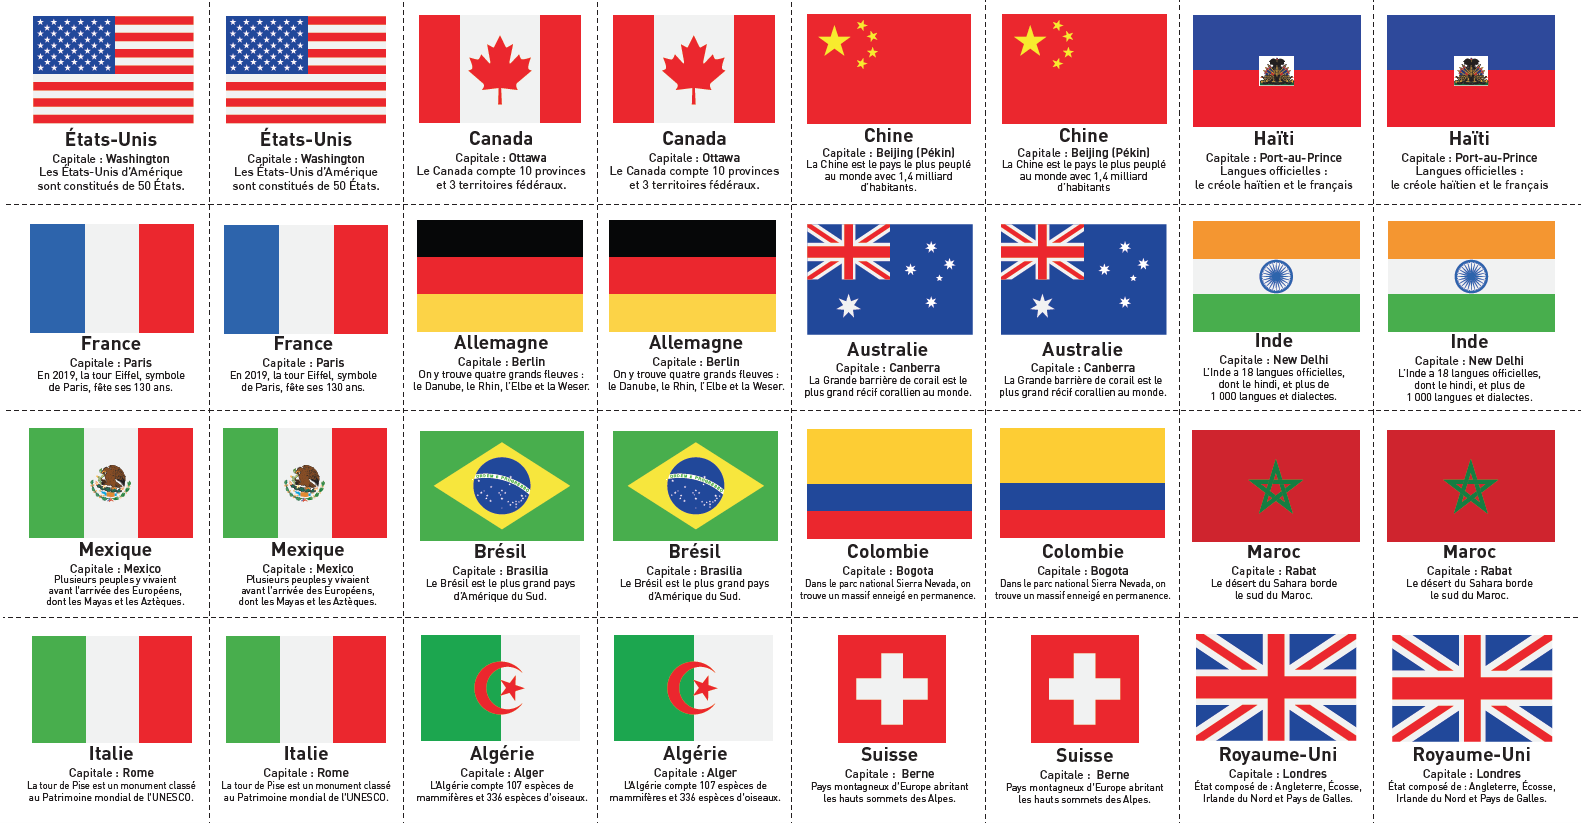 Jeu de memory à imprimer - drapeaux des pays du monde